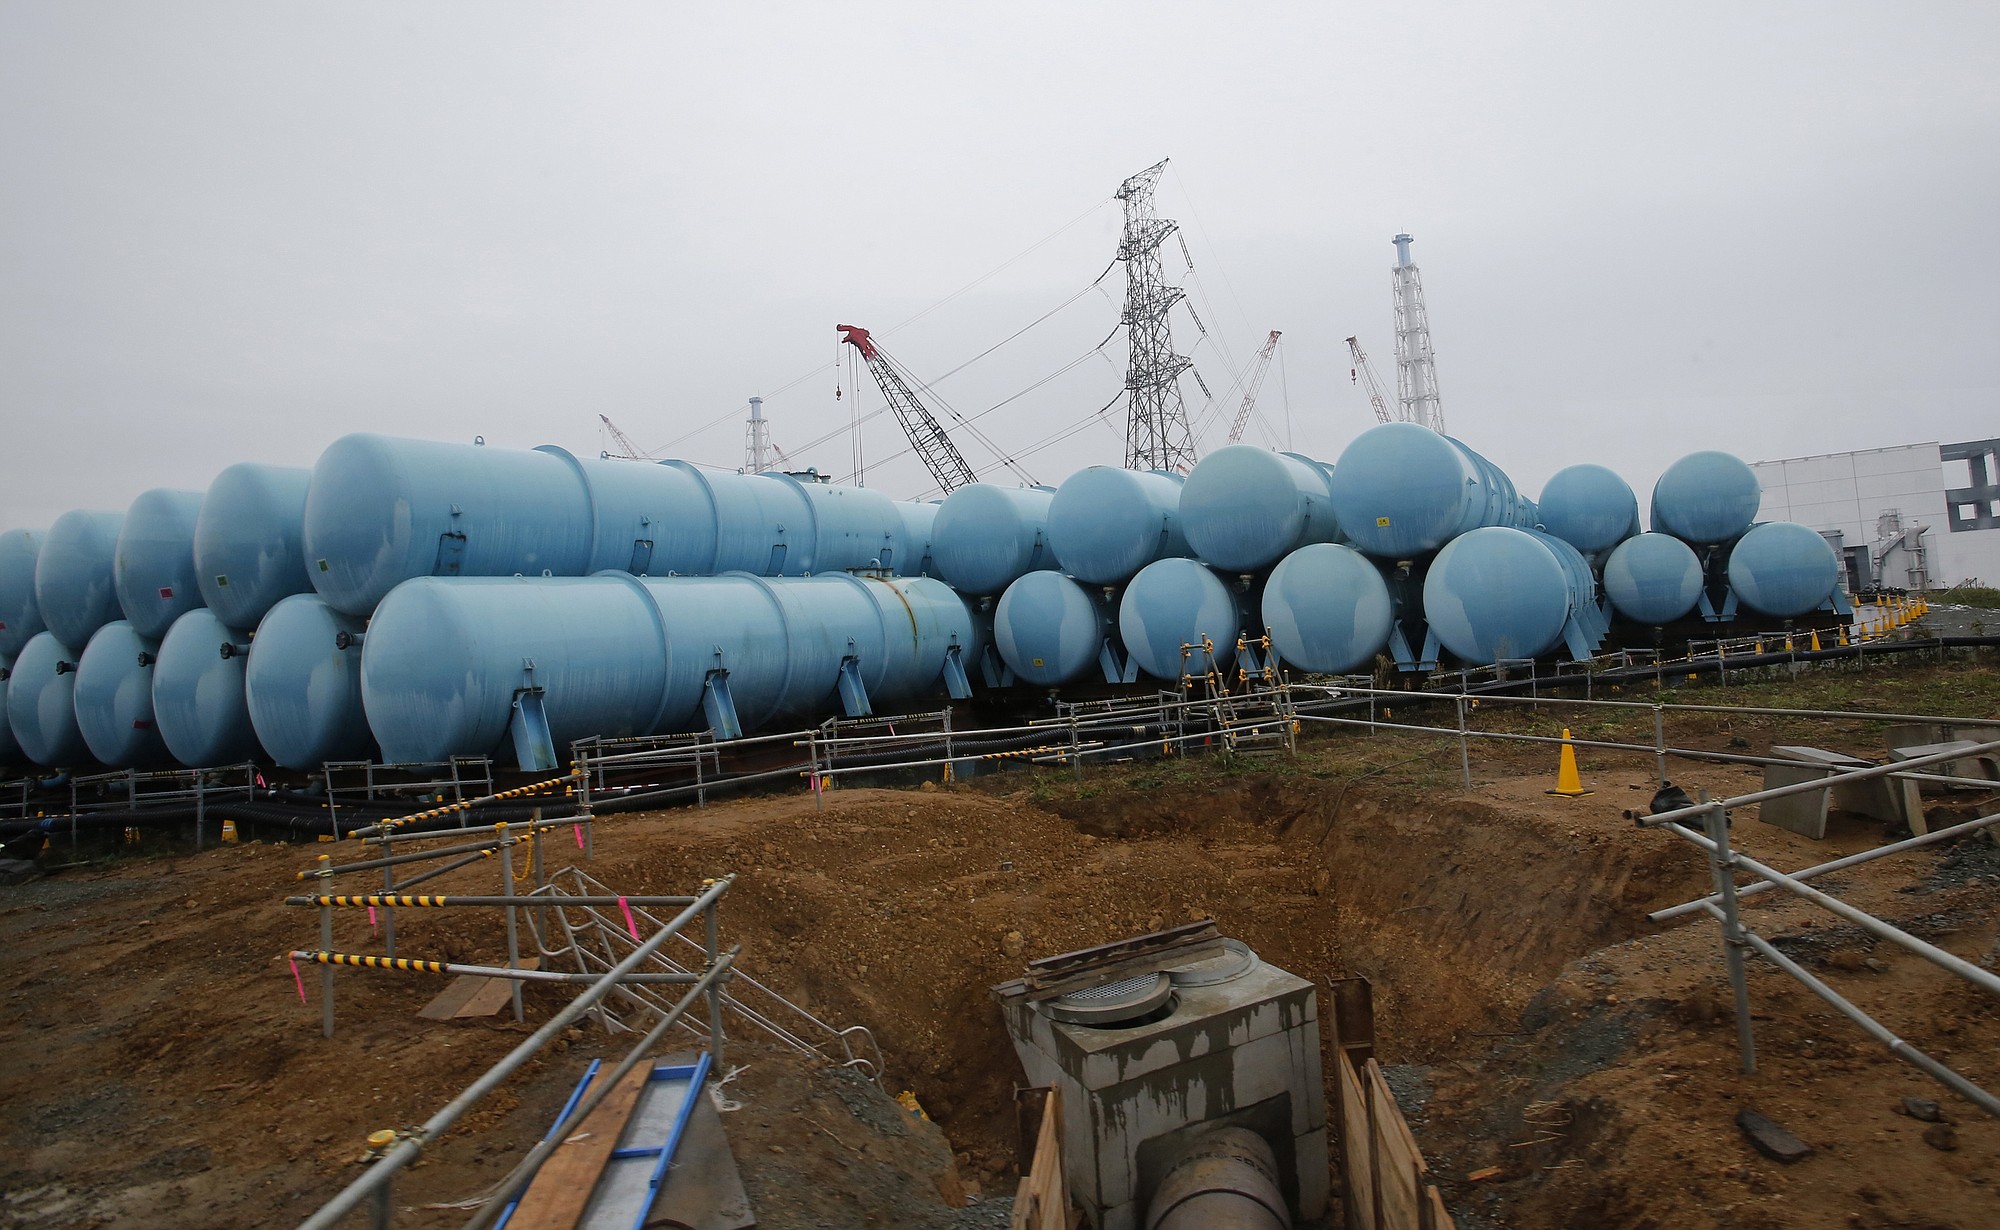 Water tanks that store contaminated water at the Fukushima Dai-ichi nuclear power plant in Okuma, Fukushima prefecture, northeastern Japan.